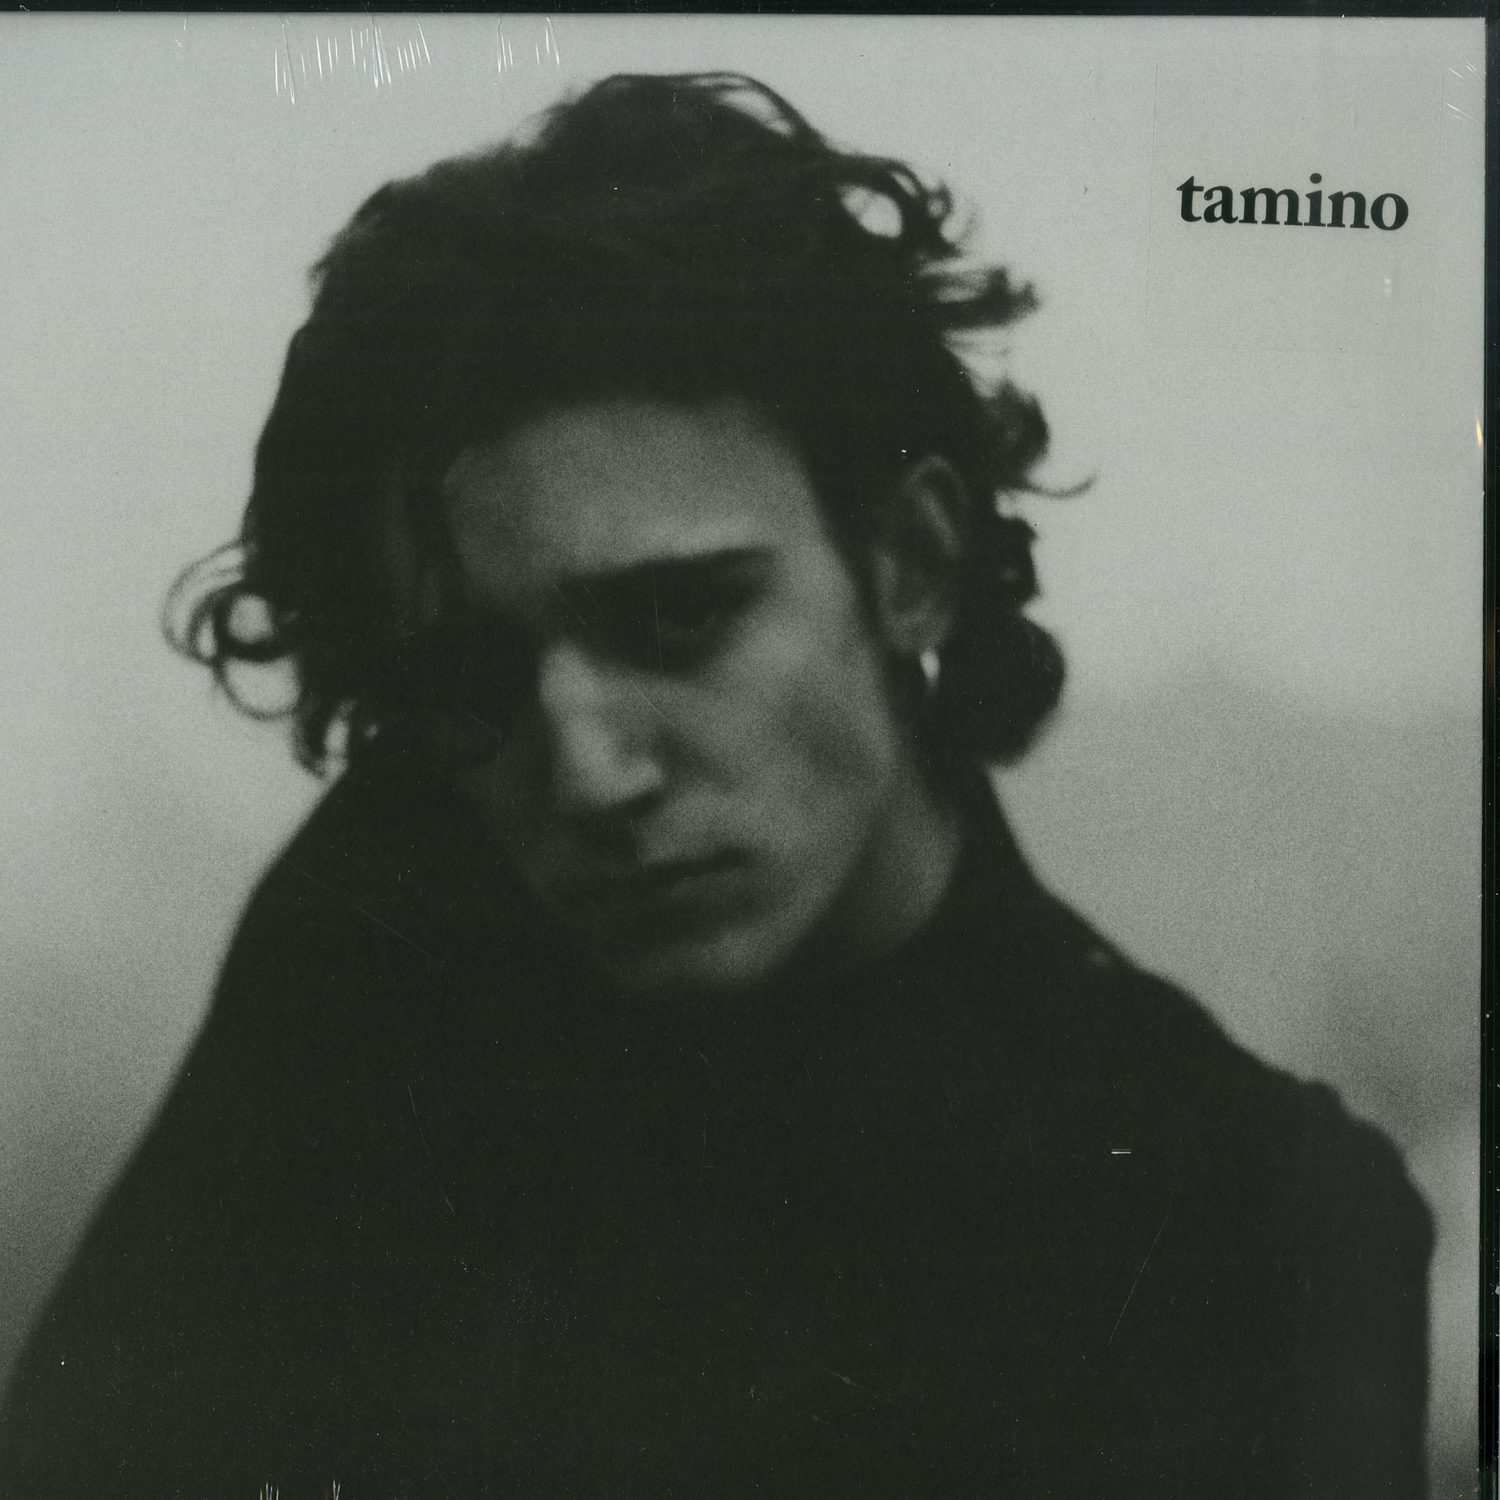 Tamino - TAMINO EP 